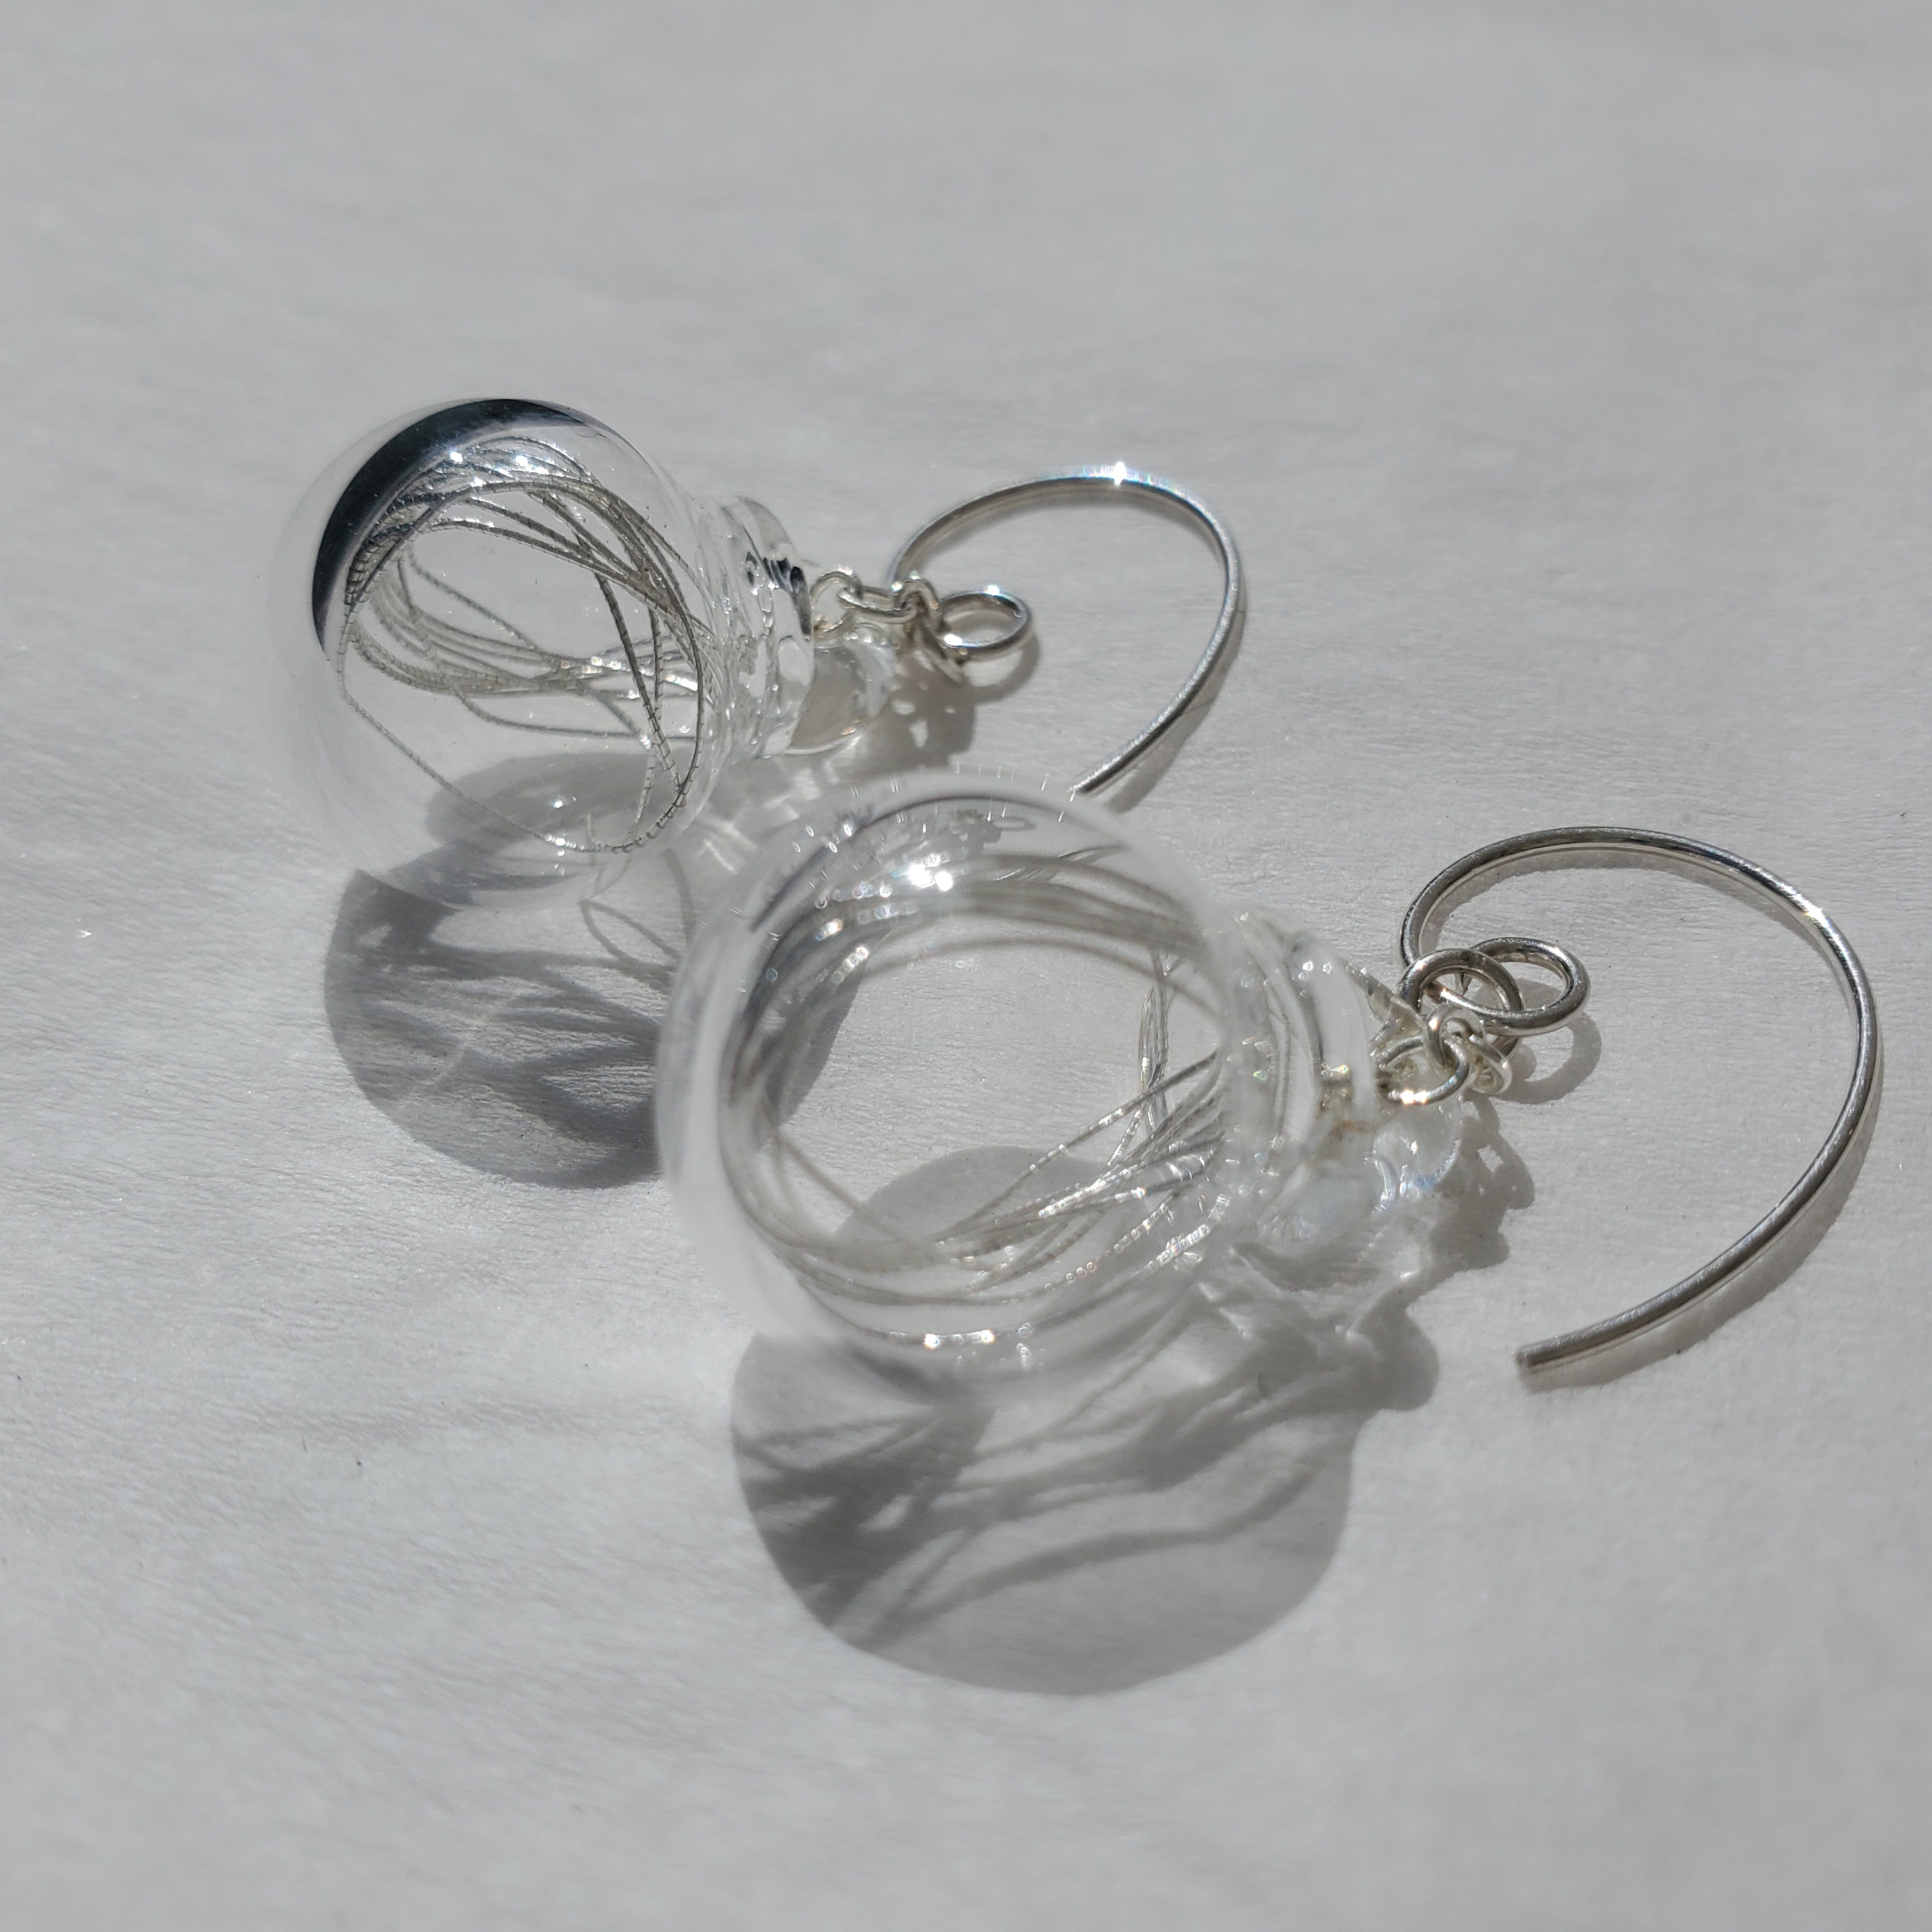 Silver thread earrings